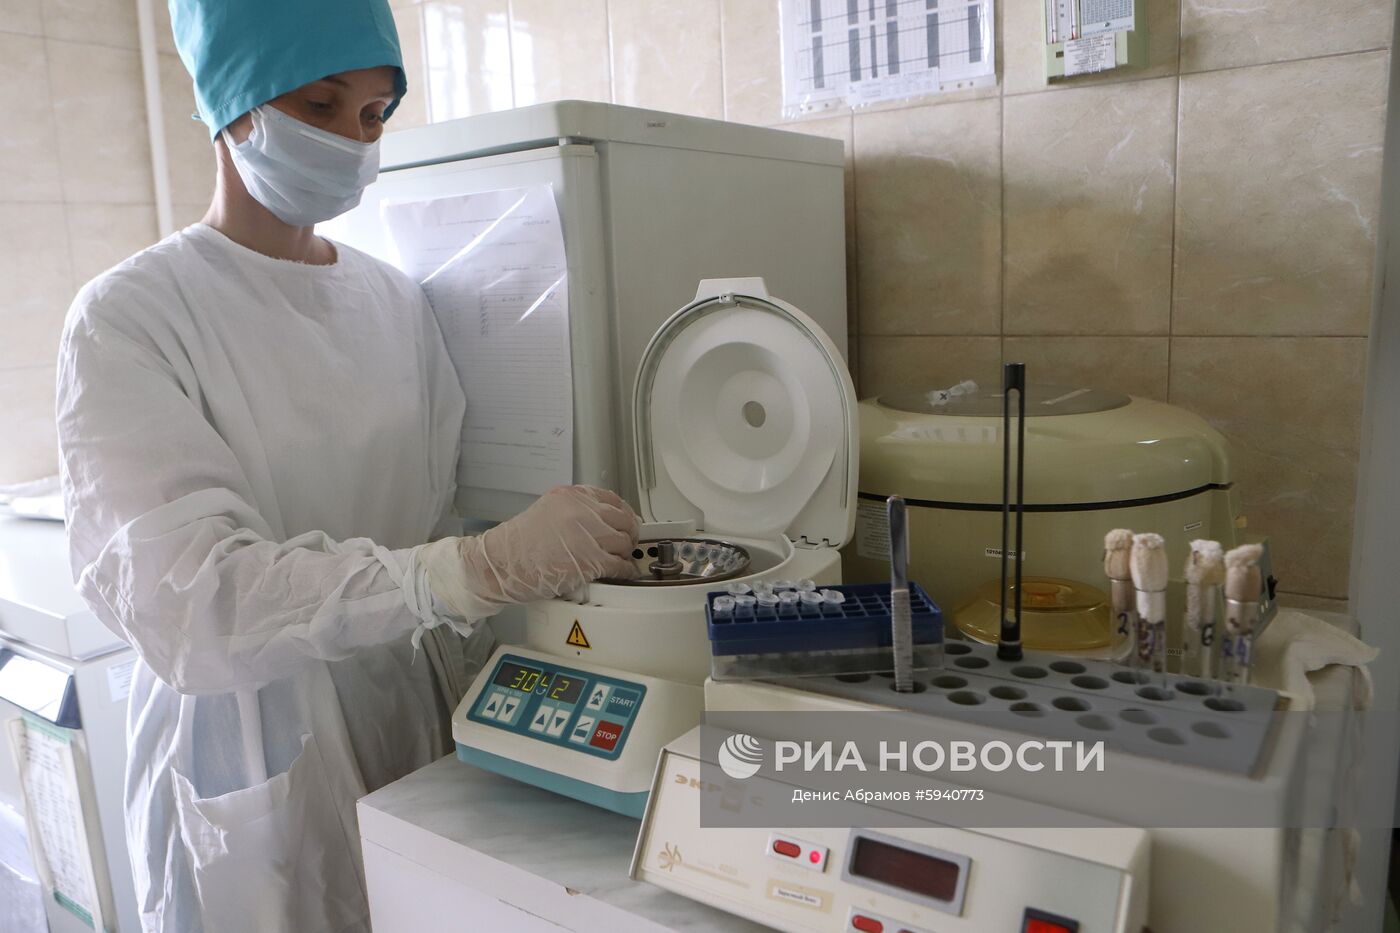 Борьба с насекомыми-переносчиками опасных заболеваний в Ставропольском крае